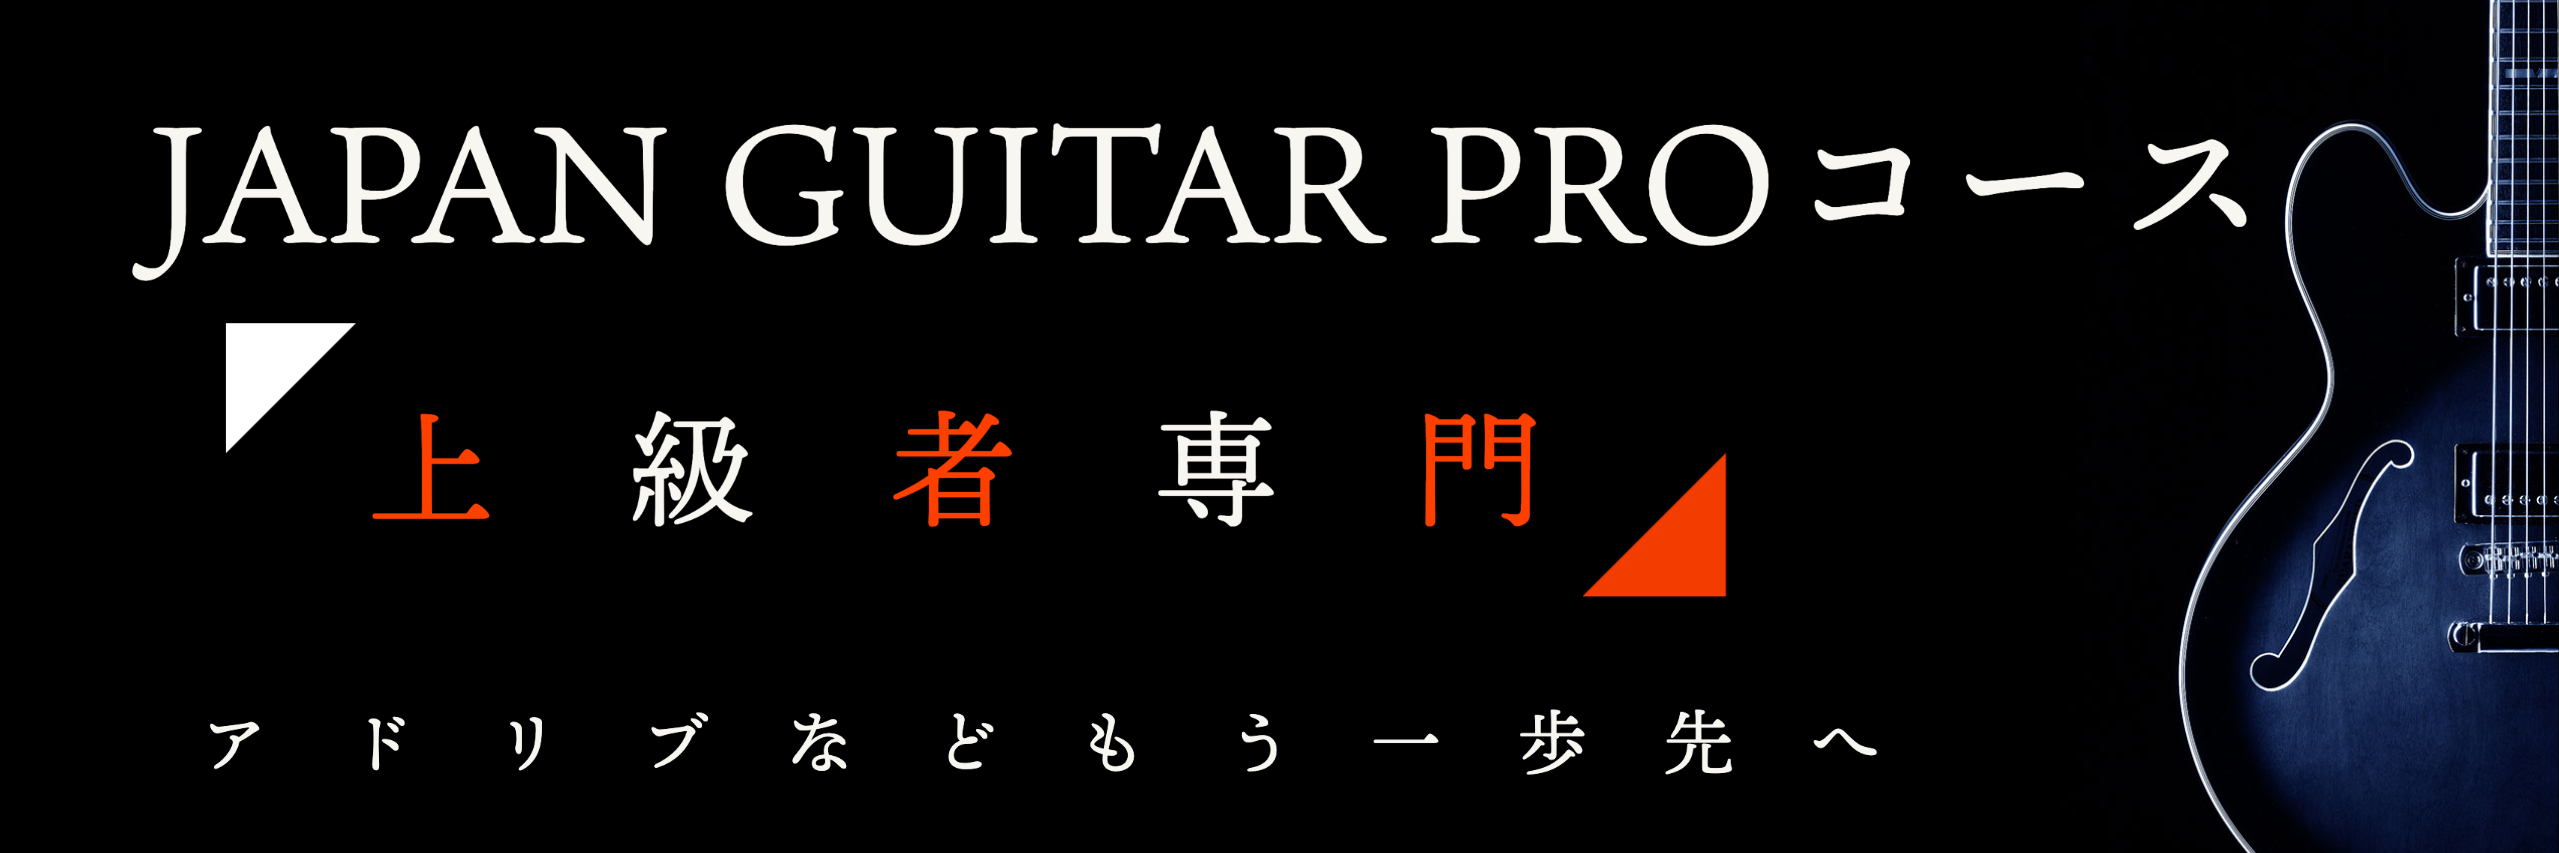 大阪、心斎橋、三宮のギター教室 ジャパンギタープロスクール